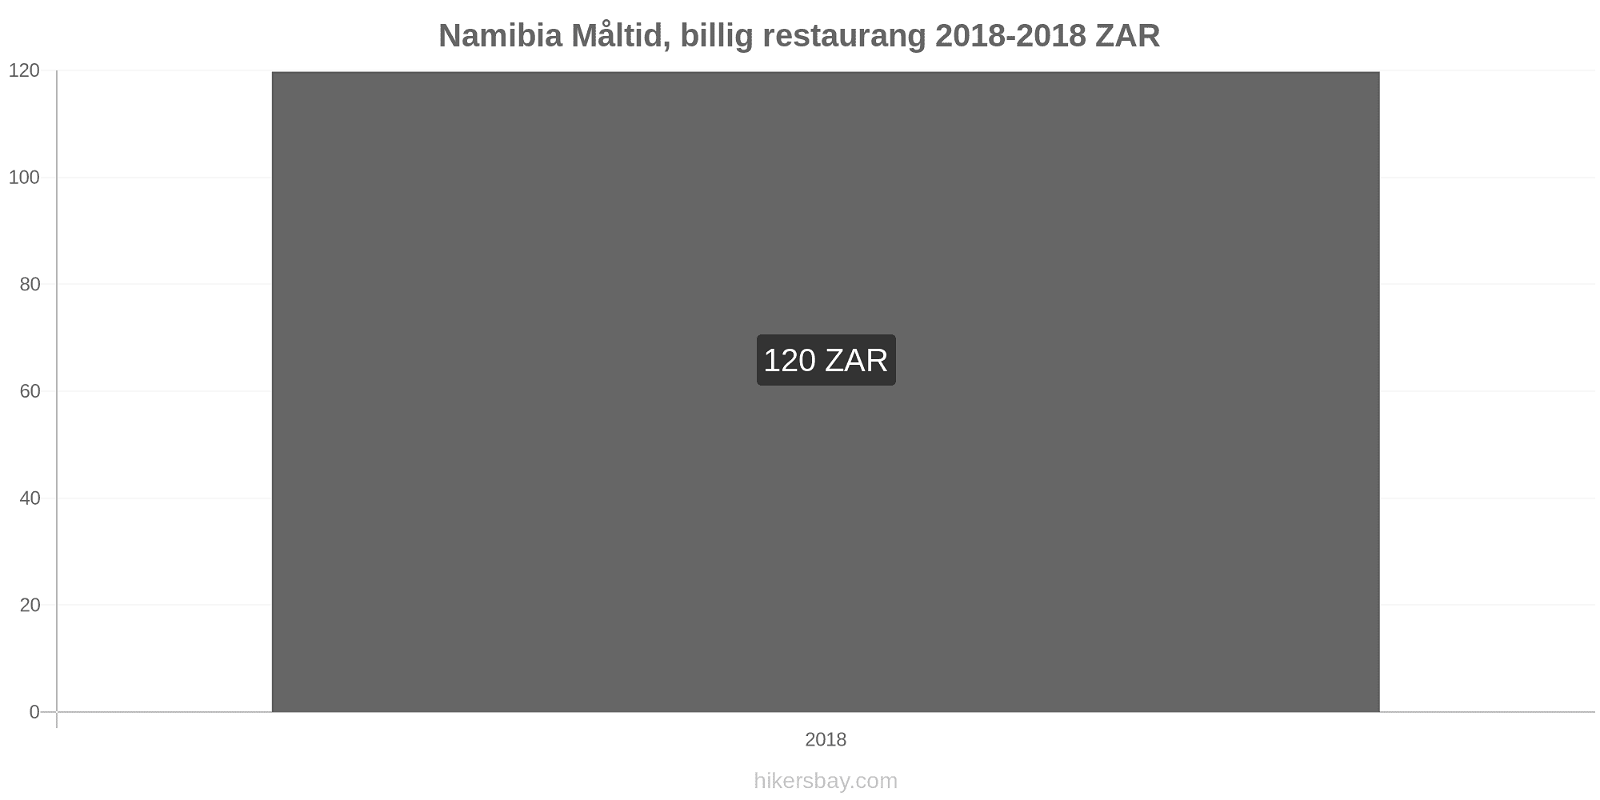 Namibia prisändringar Måltid i en billig restaurang hikersbay.com